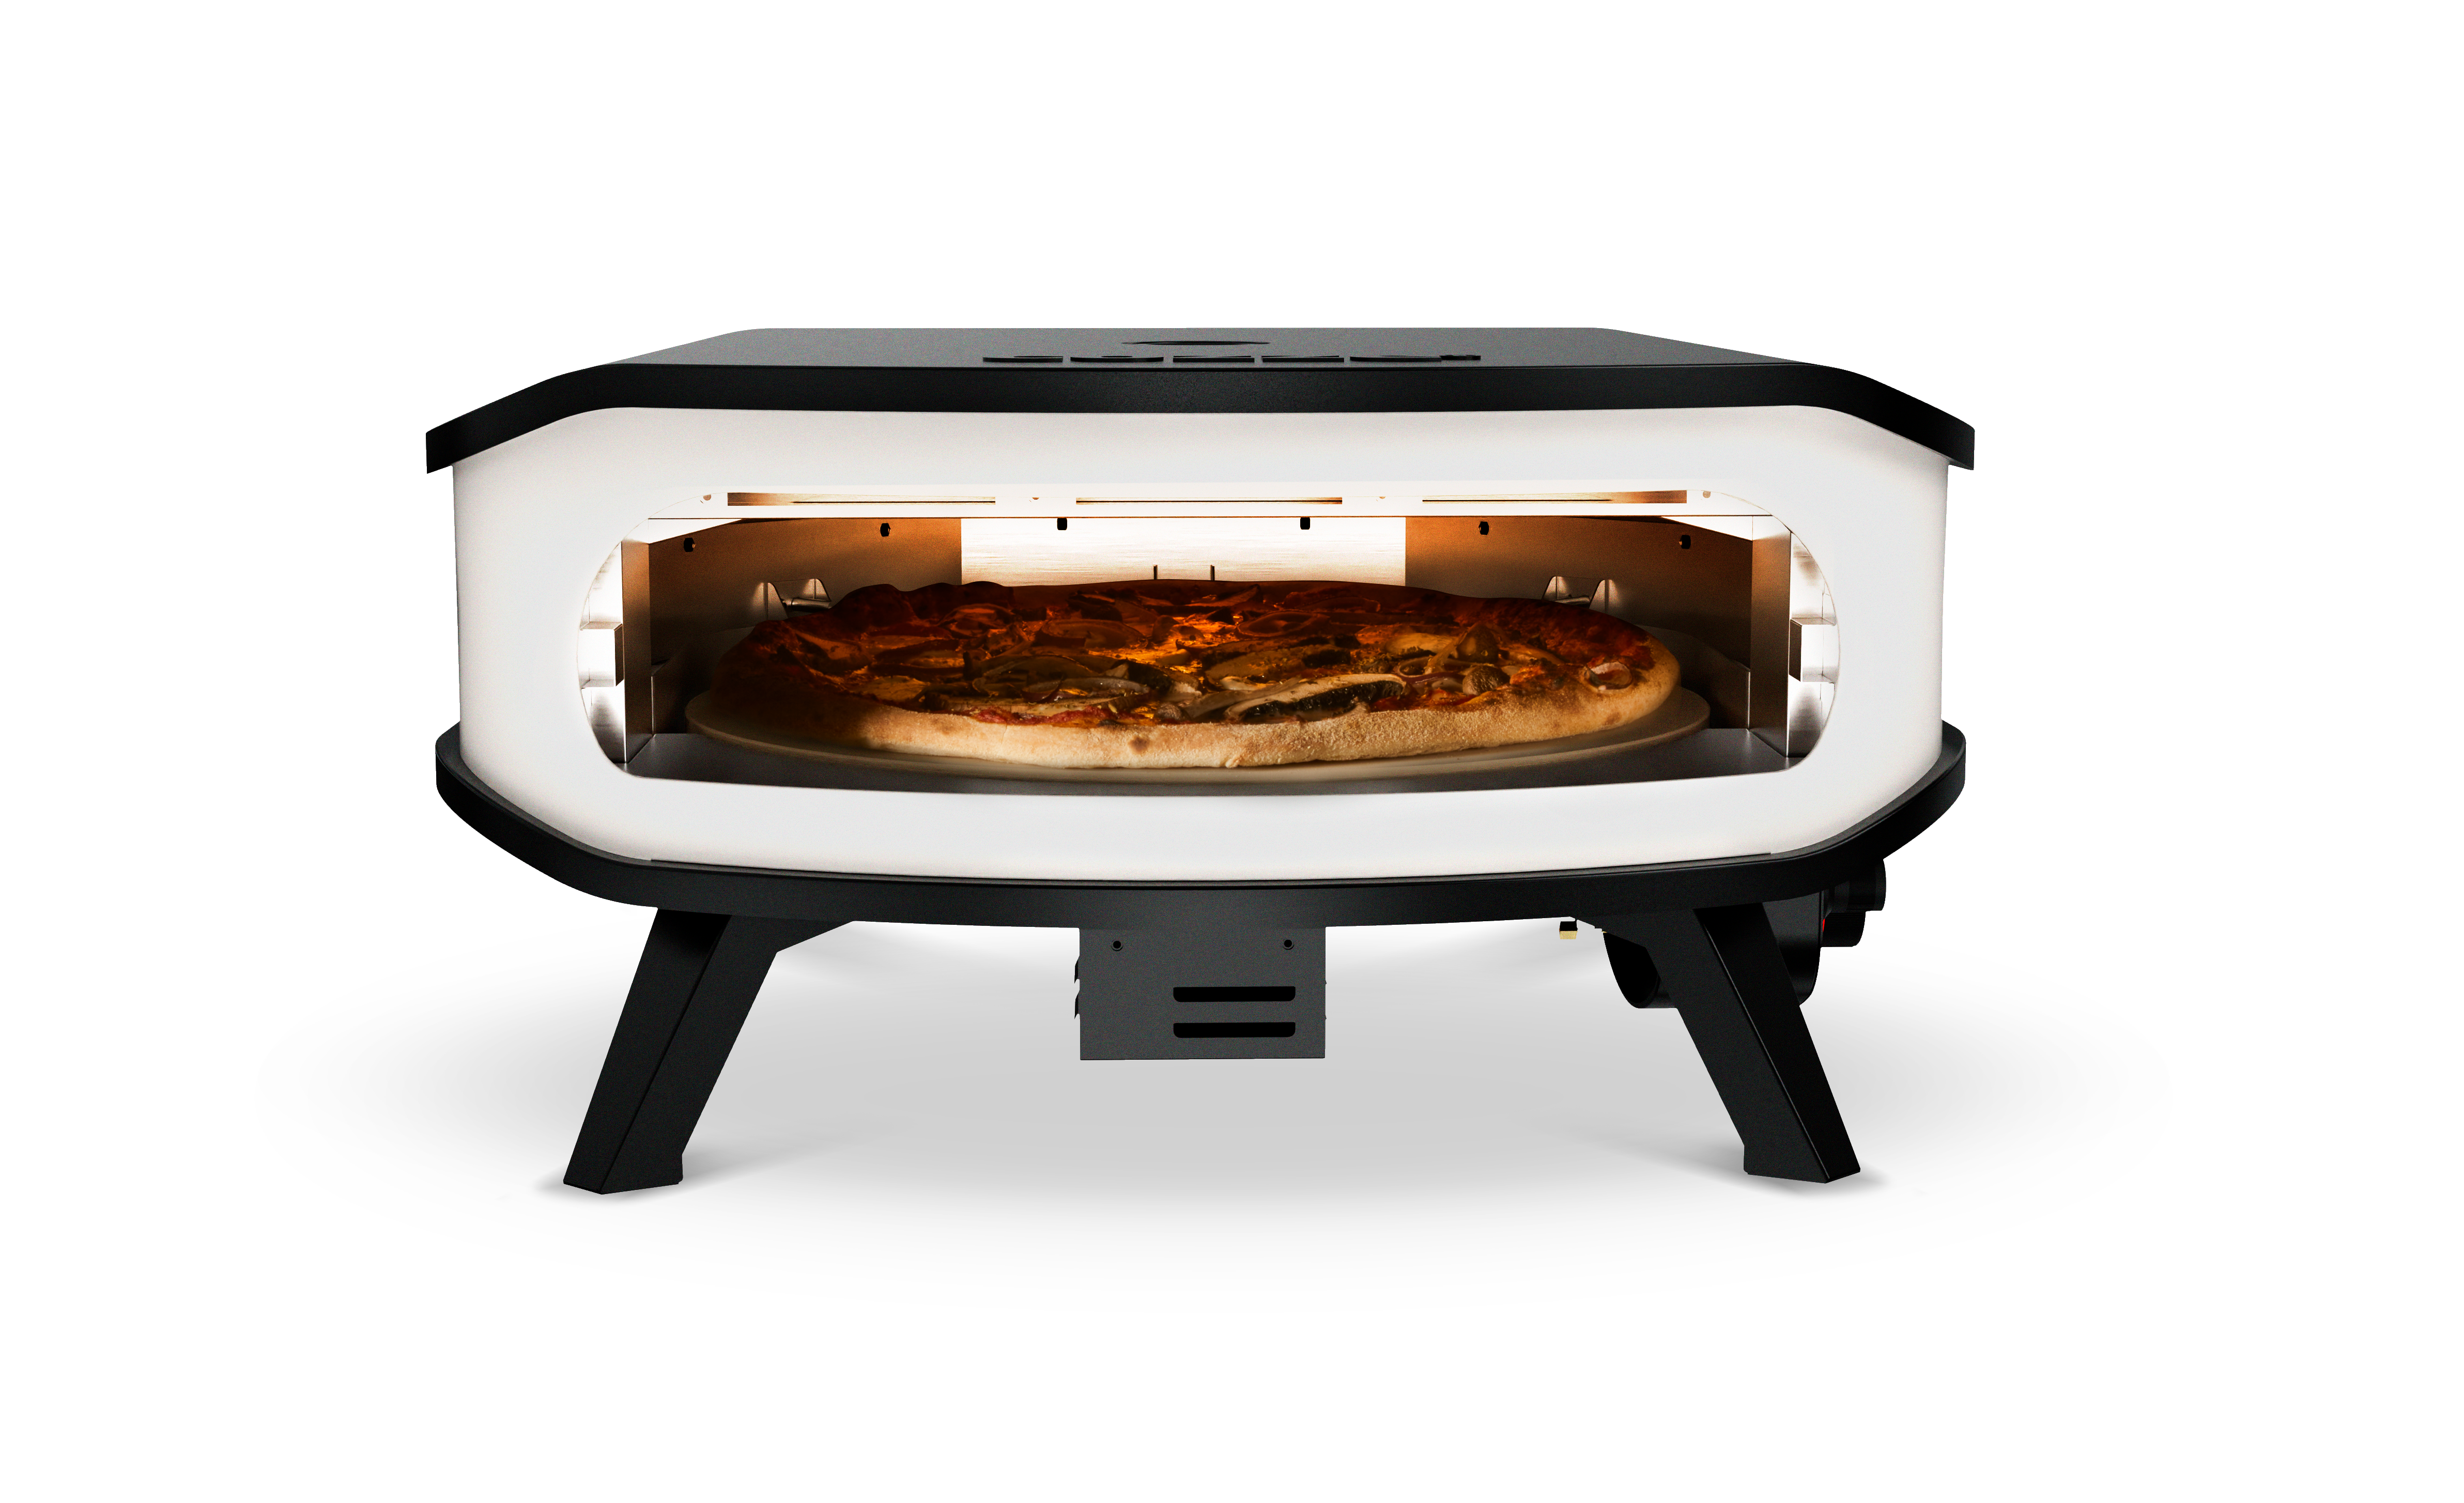 Cozze 17“ Pizzaofen Gas mit drehbaren Pizzastein inkl. Thermometer, Regler und Hitzeschild